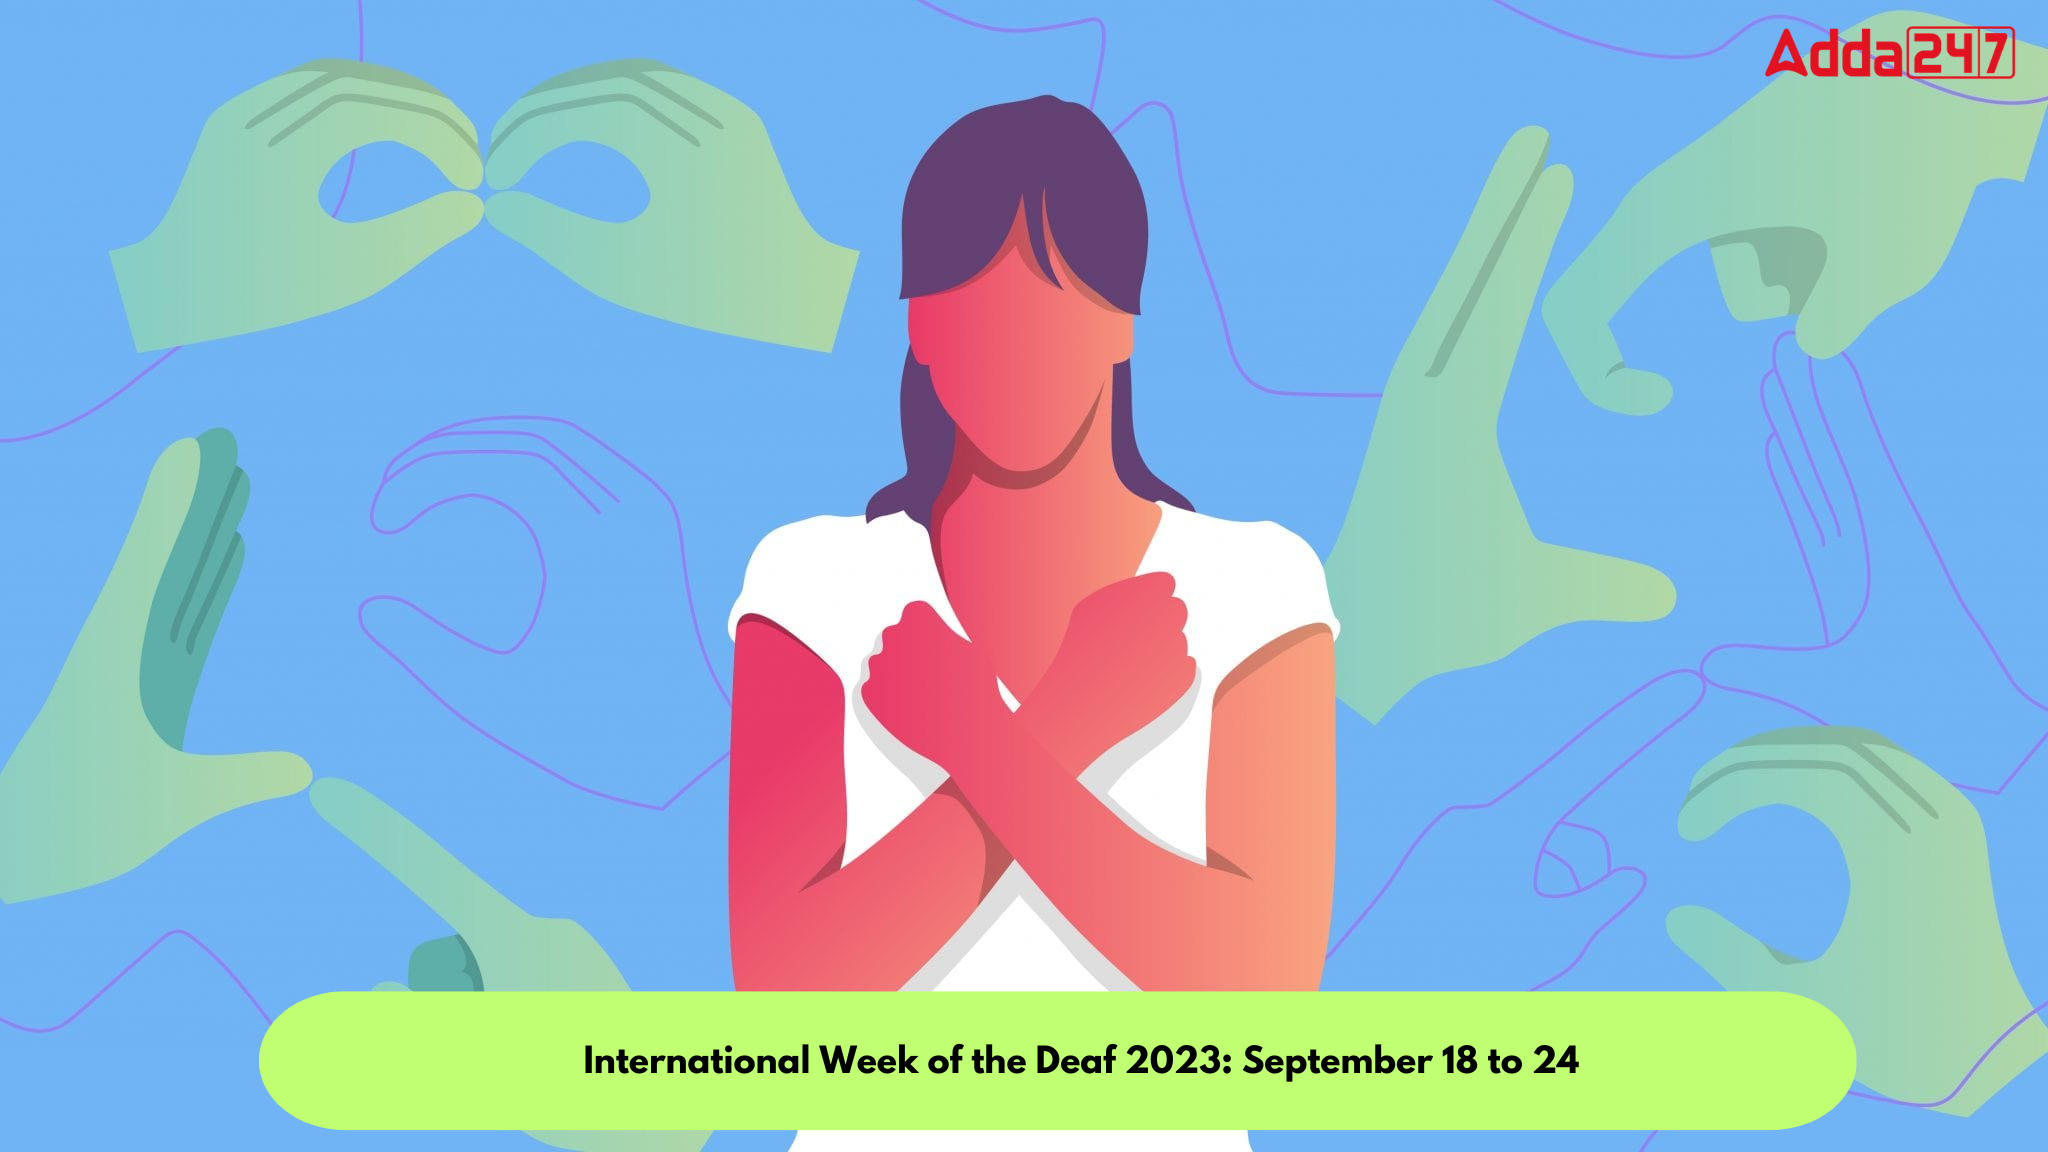 International Week of the Deaf 2023